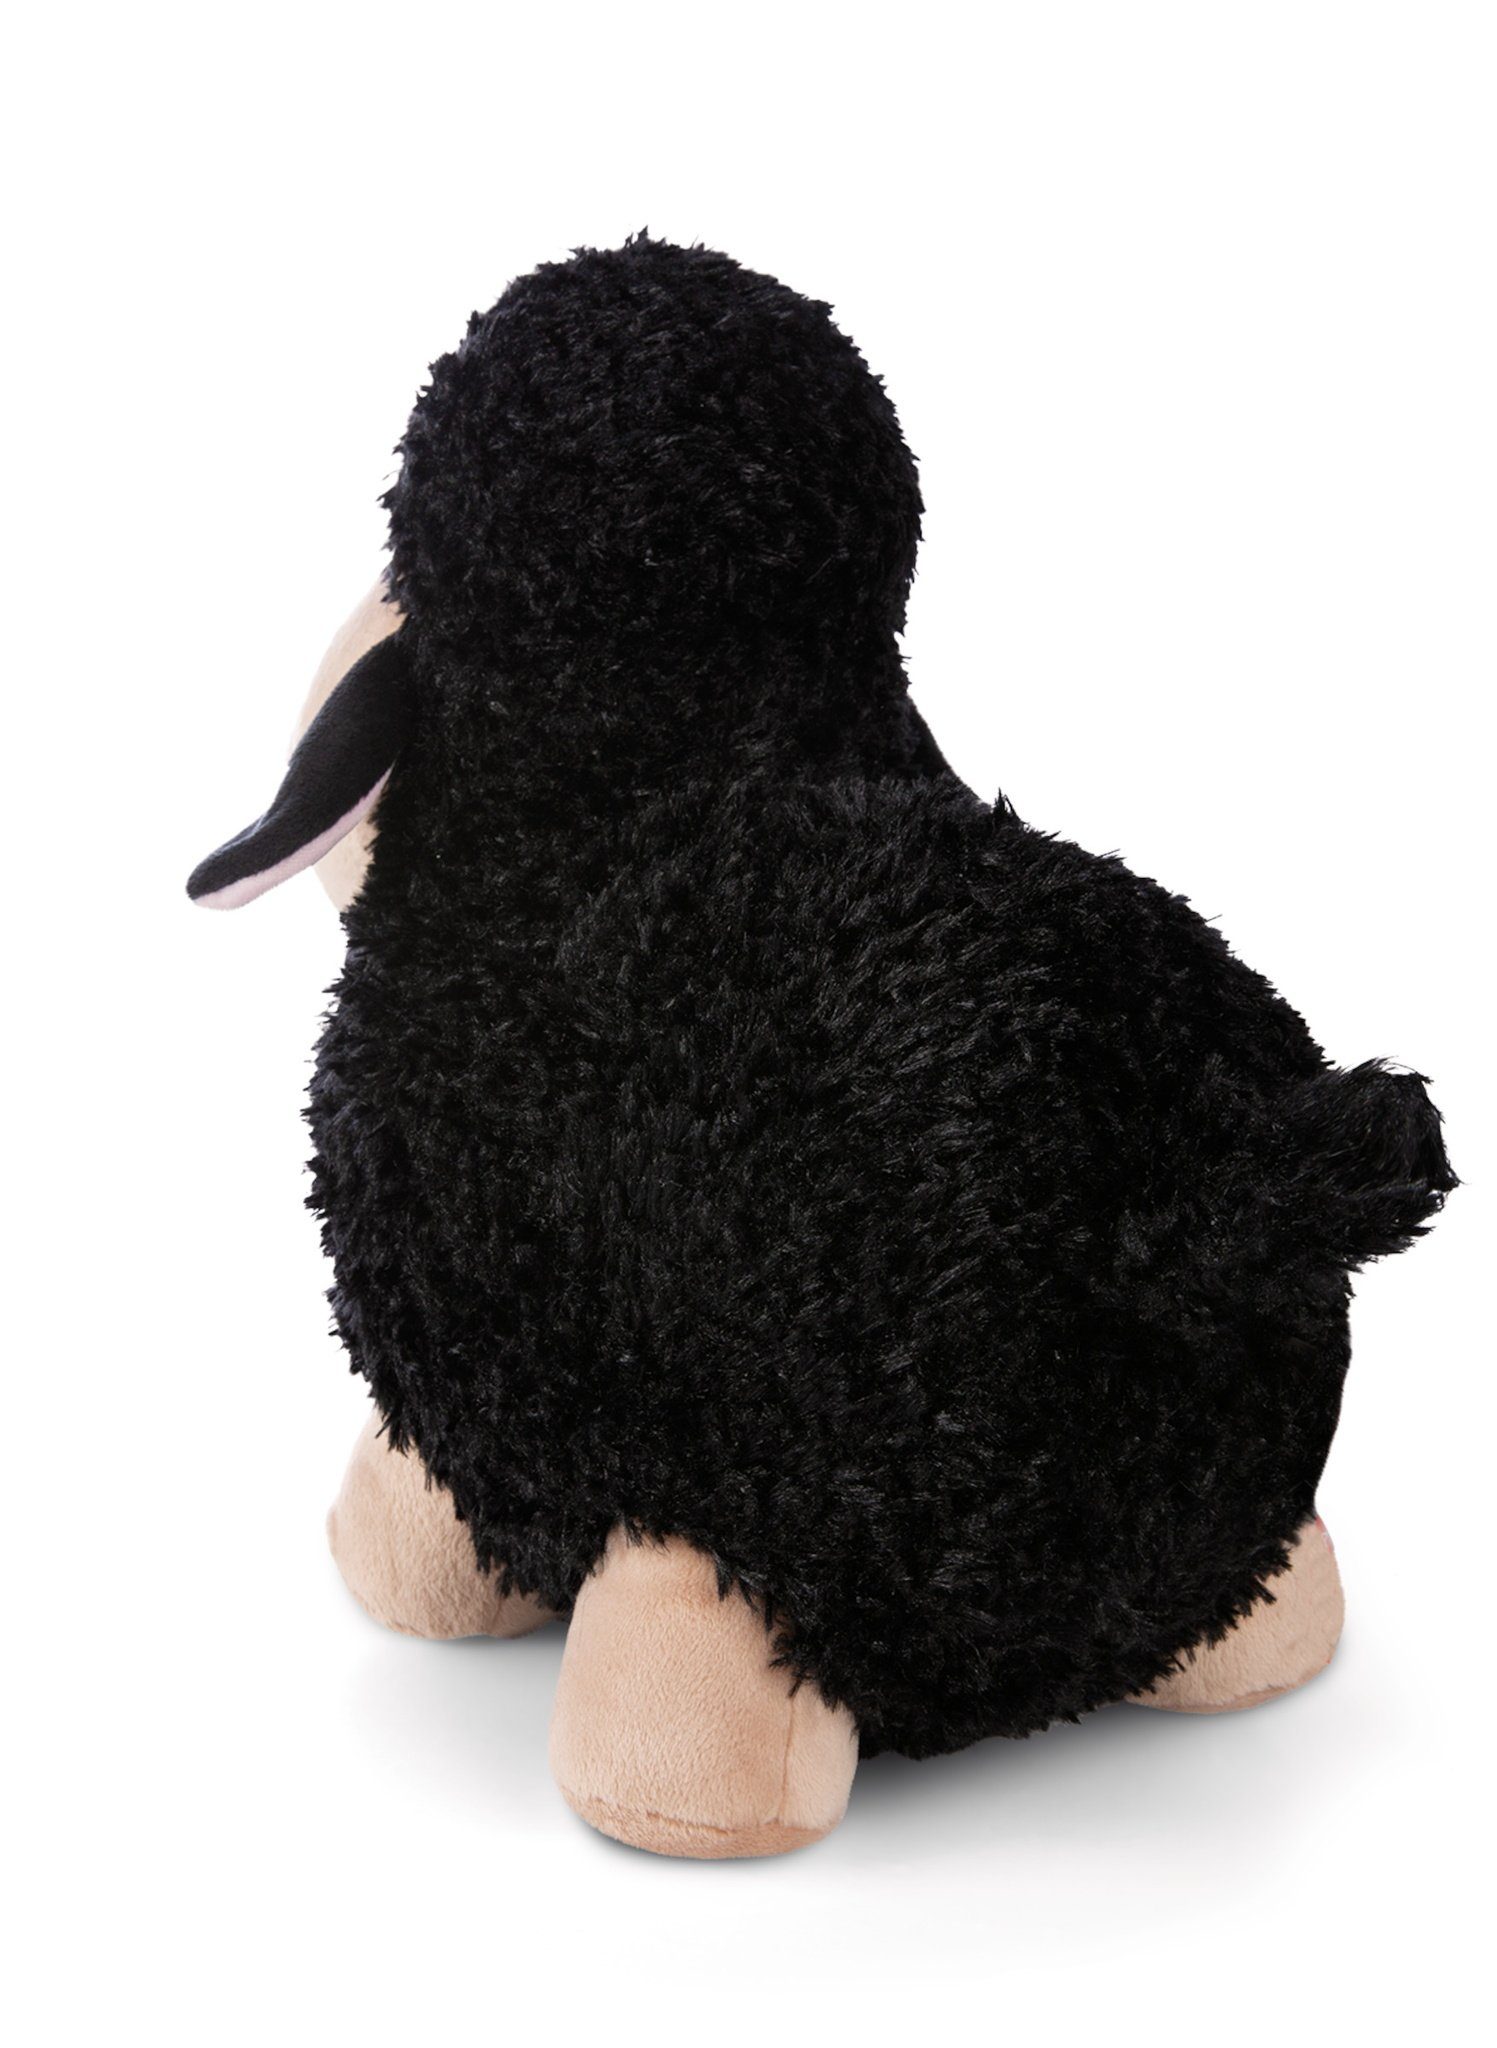 Nici Plüschanhänger Nici Kuscheltier Schaf schwarz/beige 13 cm stehend Plüschschaf